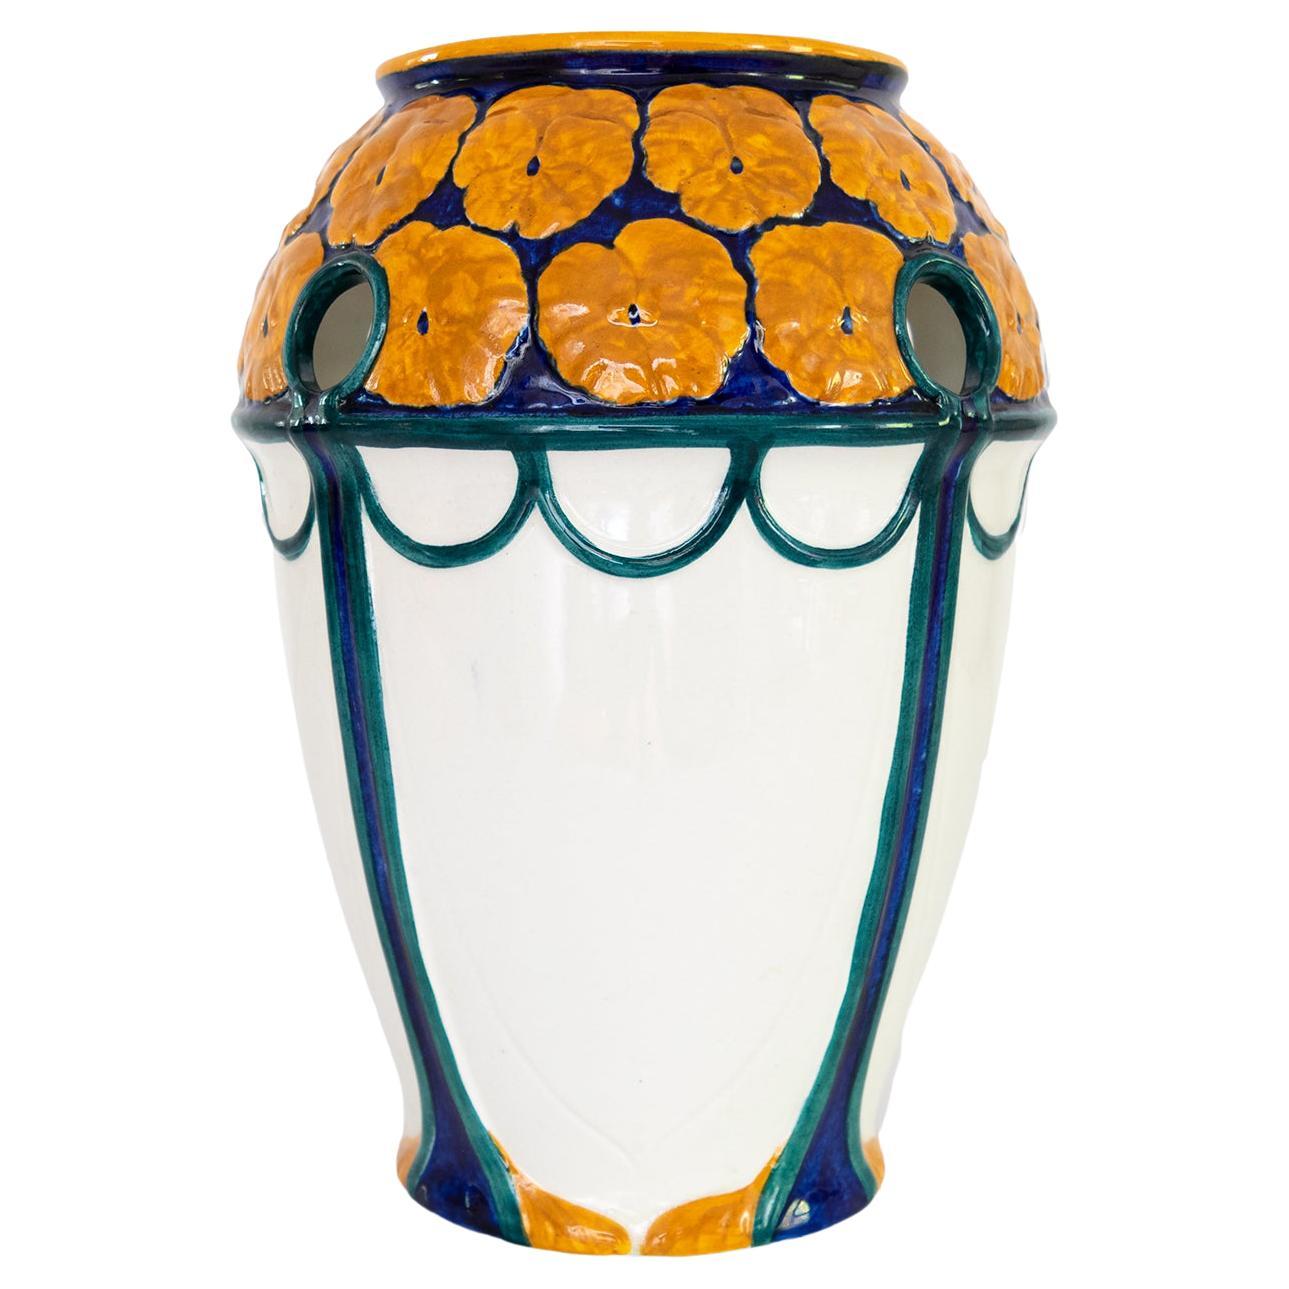 Vase suédois d'époque Art nouveau Alf Wallander avec une couronne de fleurs orange